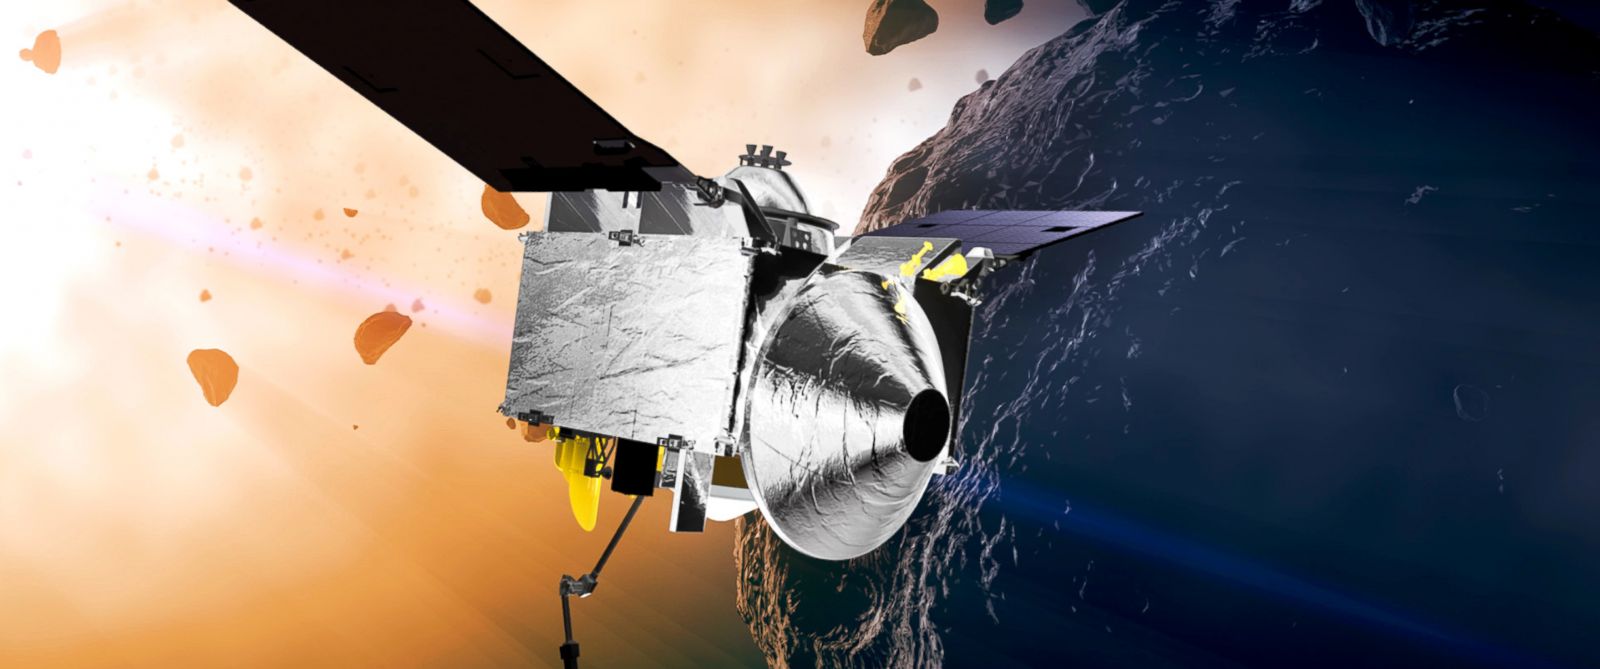 کاوشگر جدید ناسا برای بررسی شهاب سنگی که میتواند زمین را نابود کند